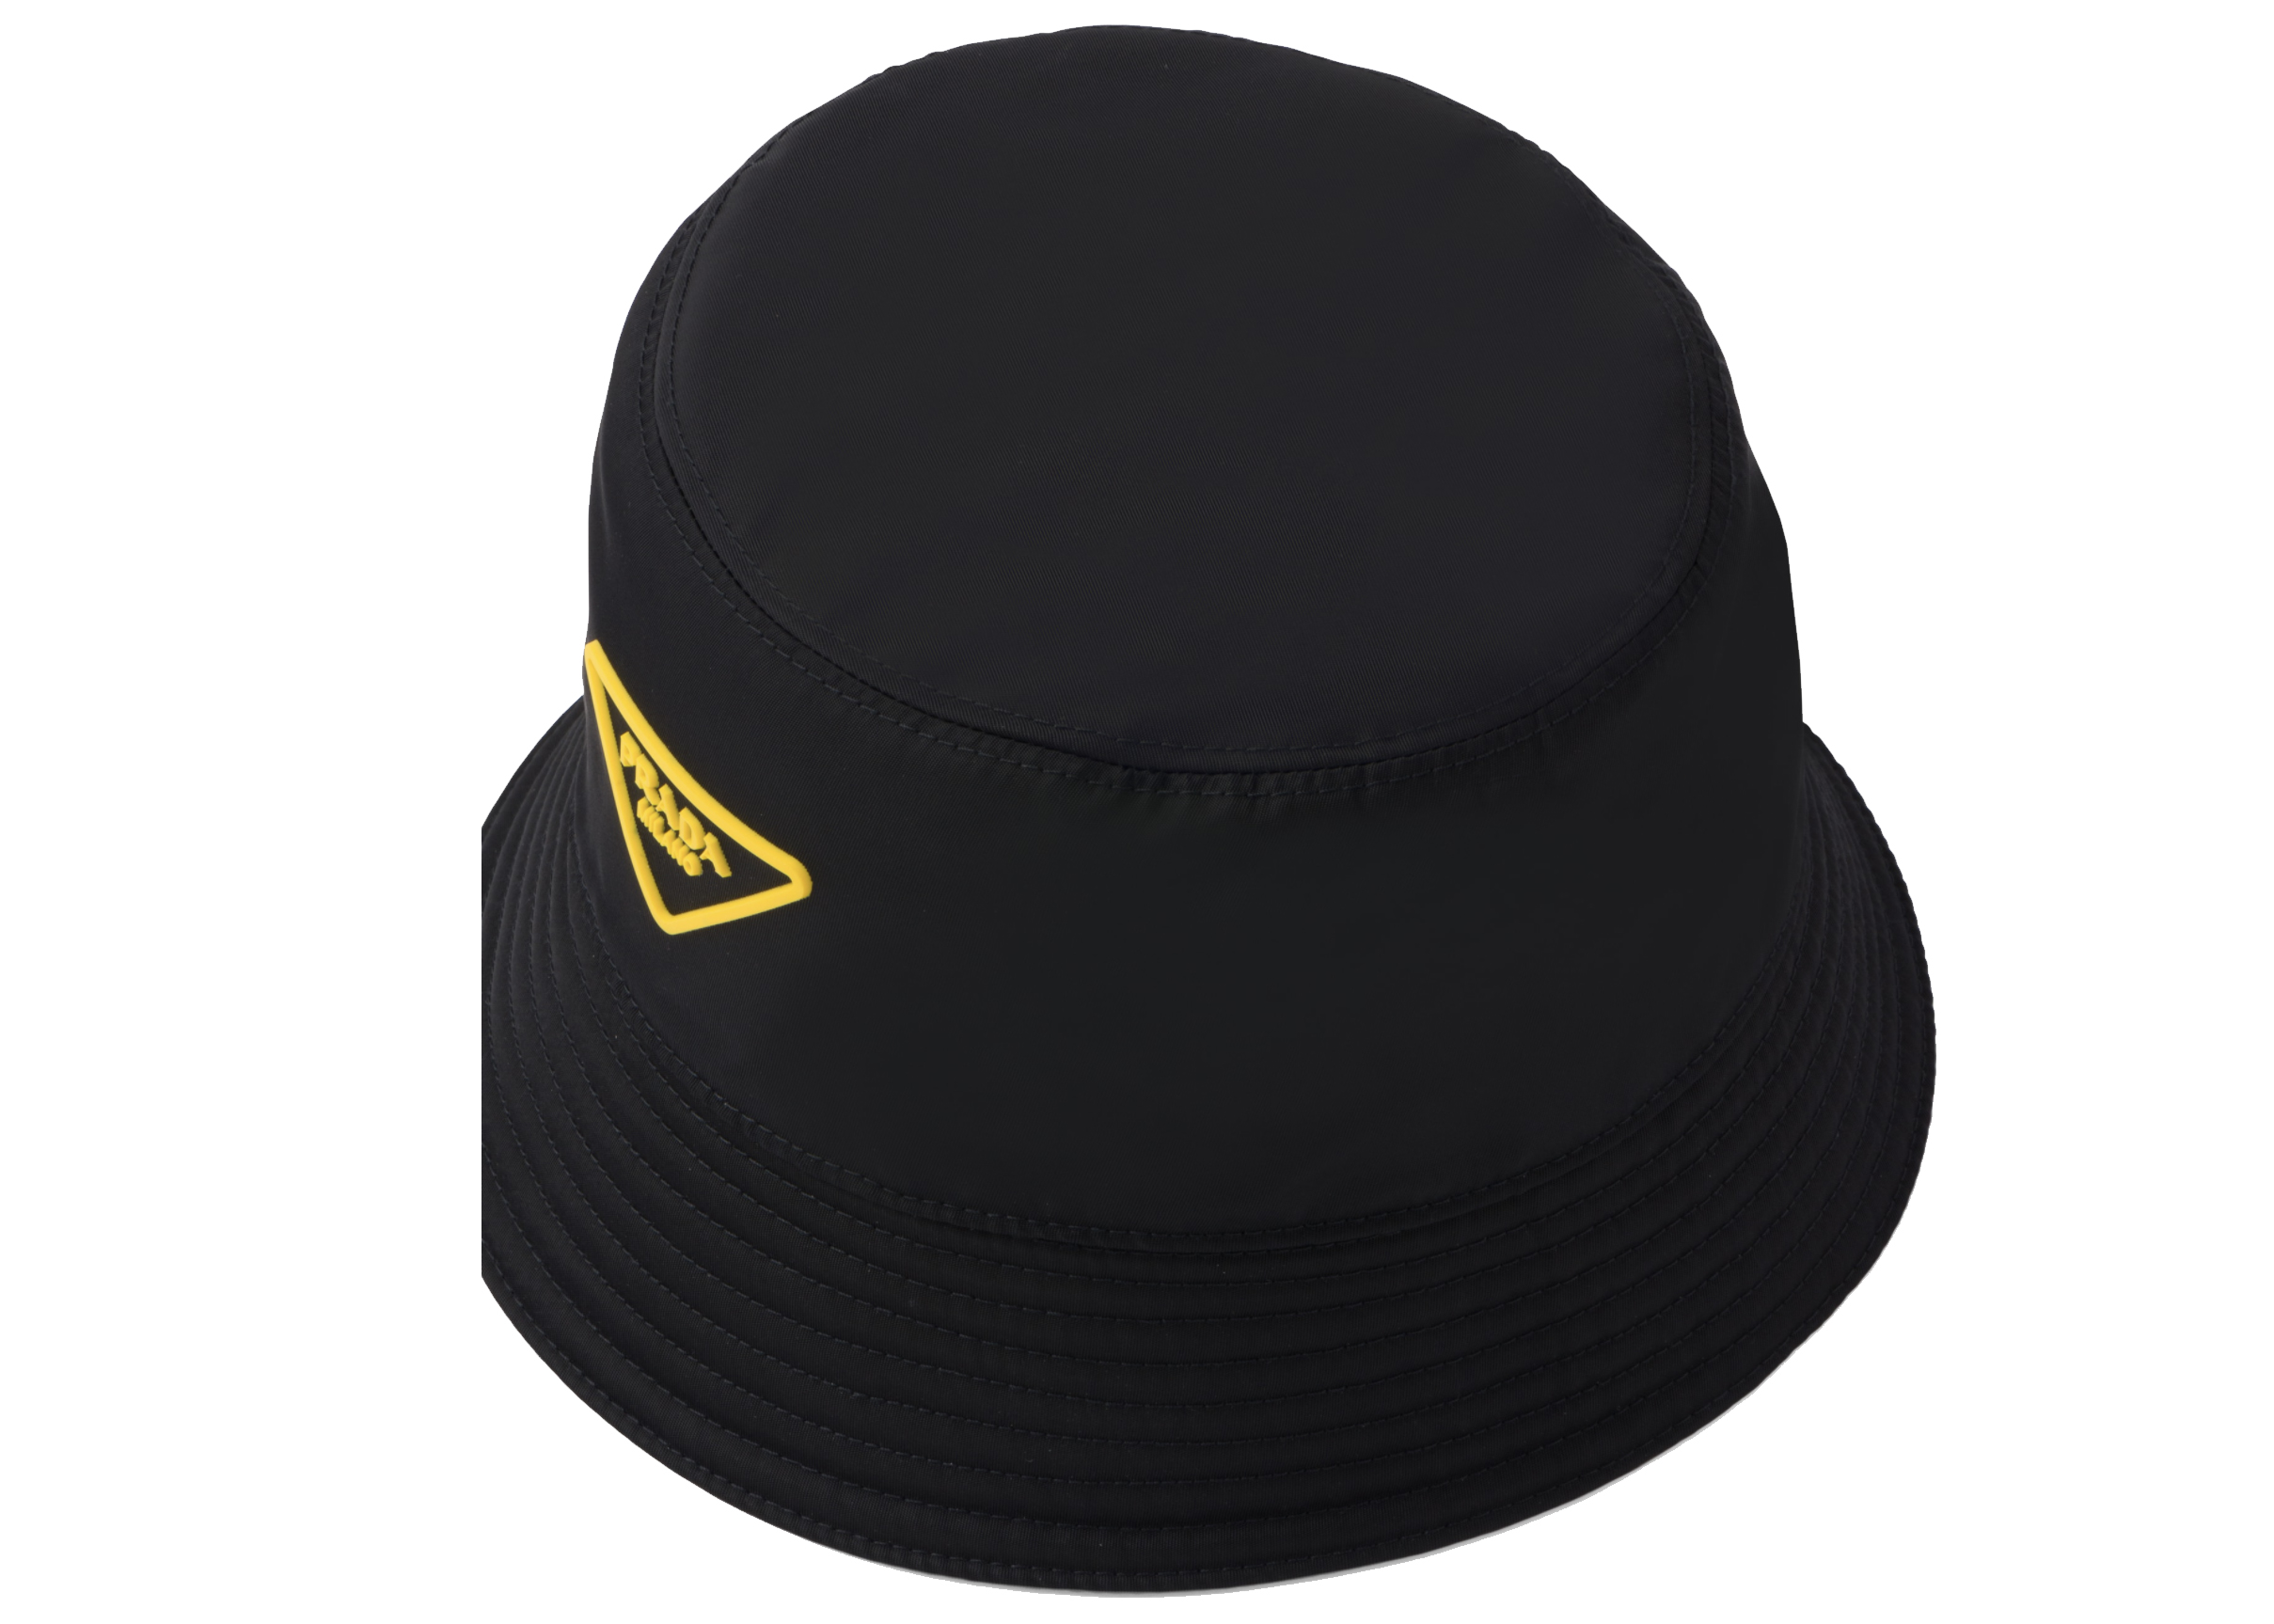 prada black nylon bucket hat